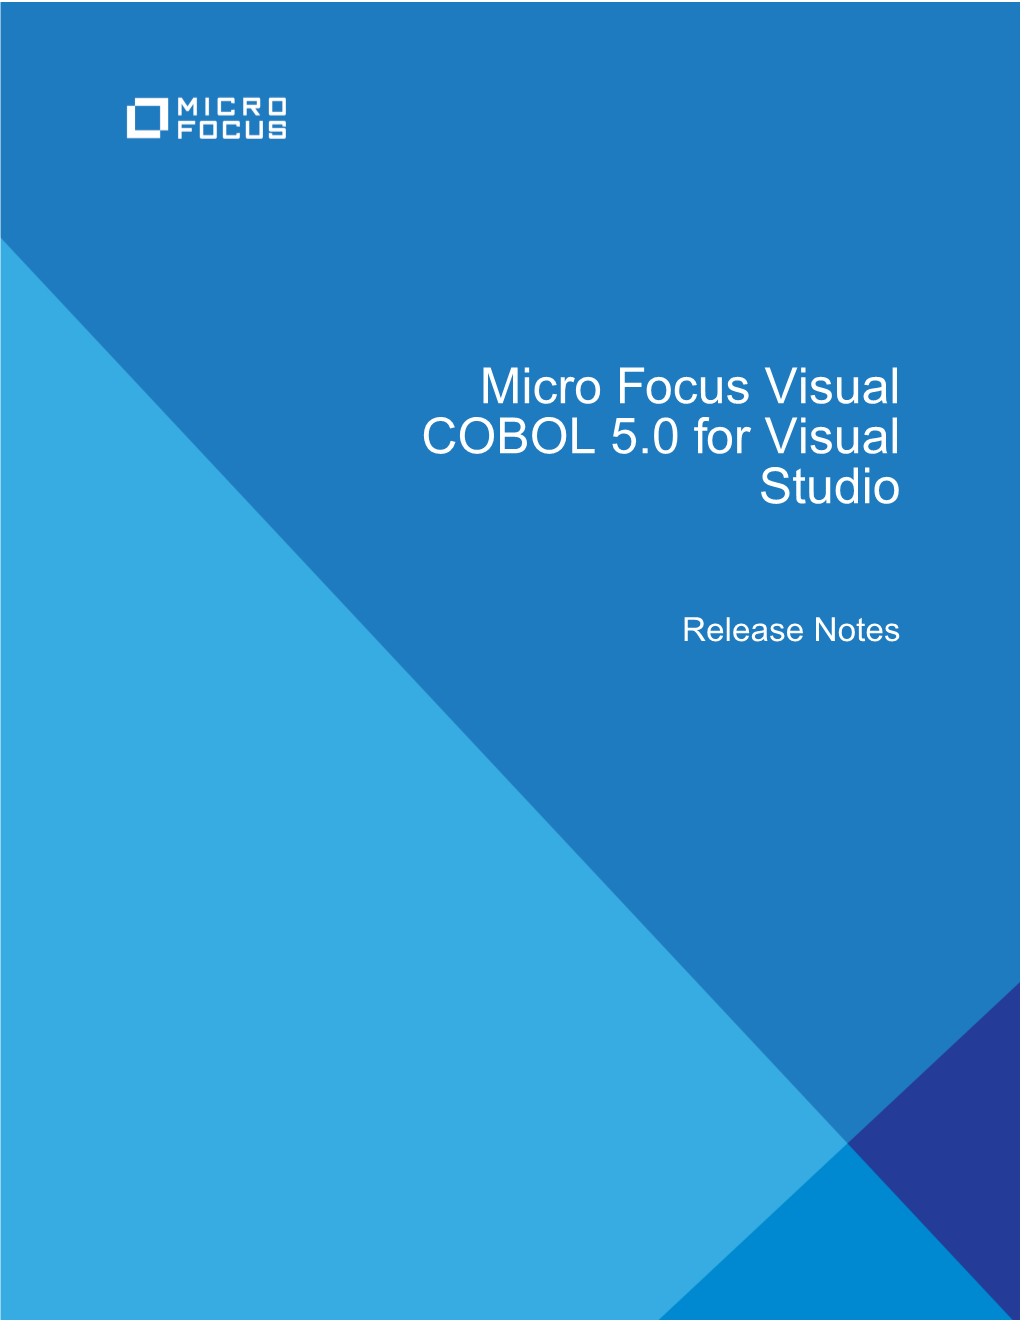 Micro Focus Visual COBOL 5.0 for Visual Studio